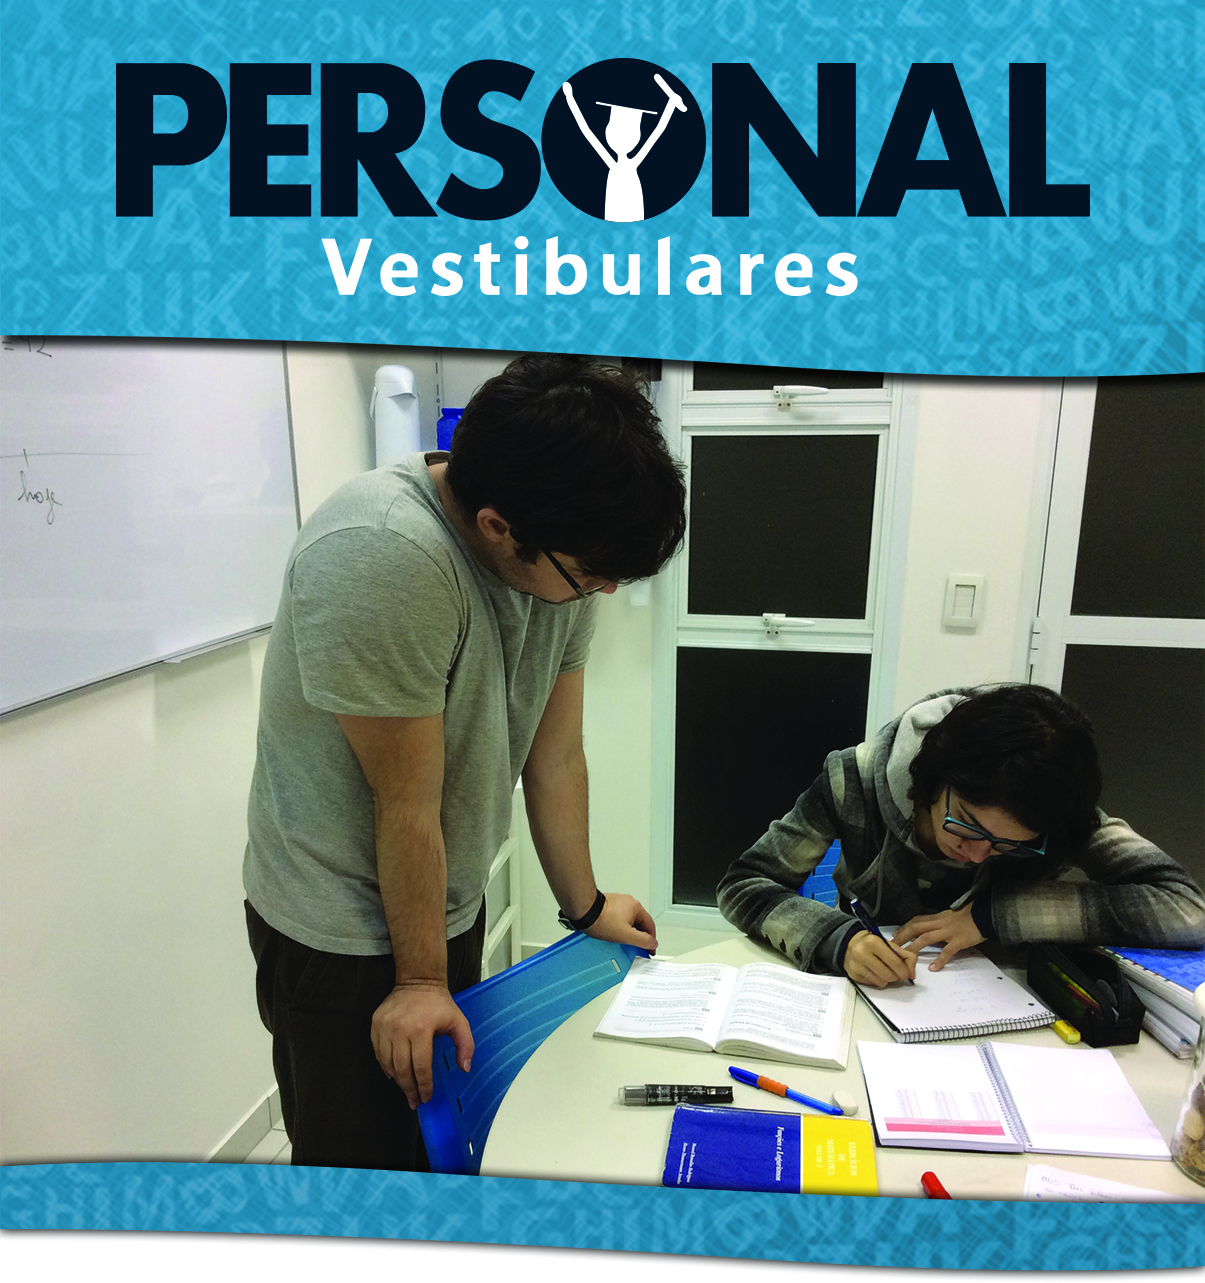 Personal Vestibulares - O Melhor cursinho em So Paulo